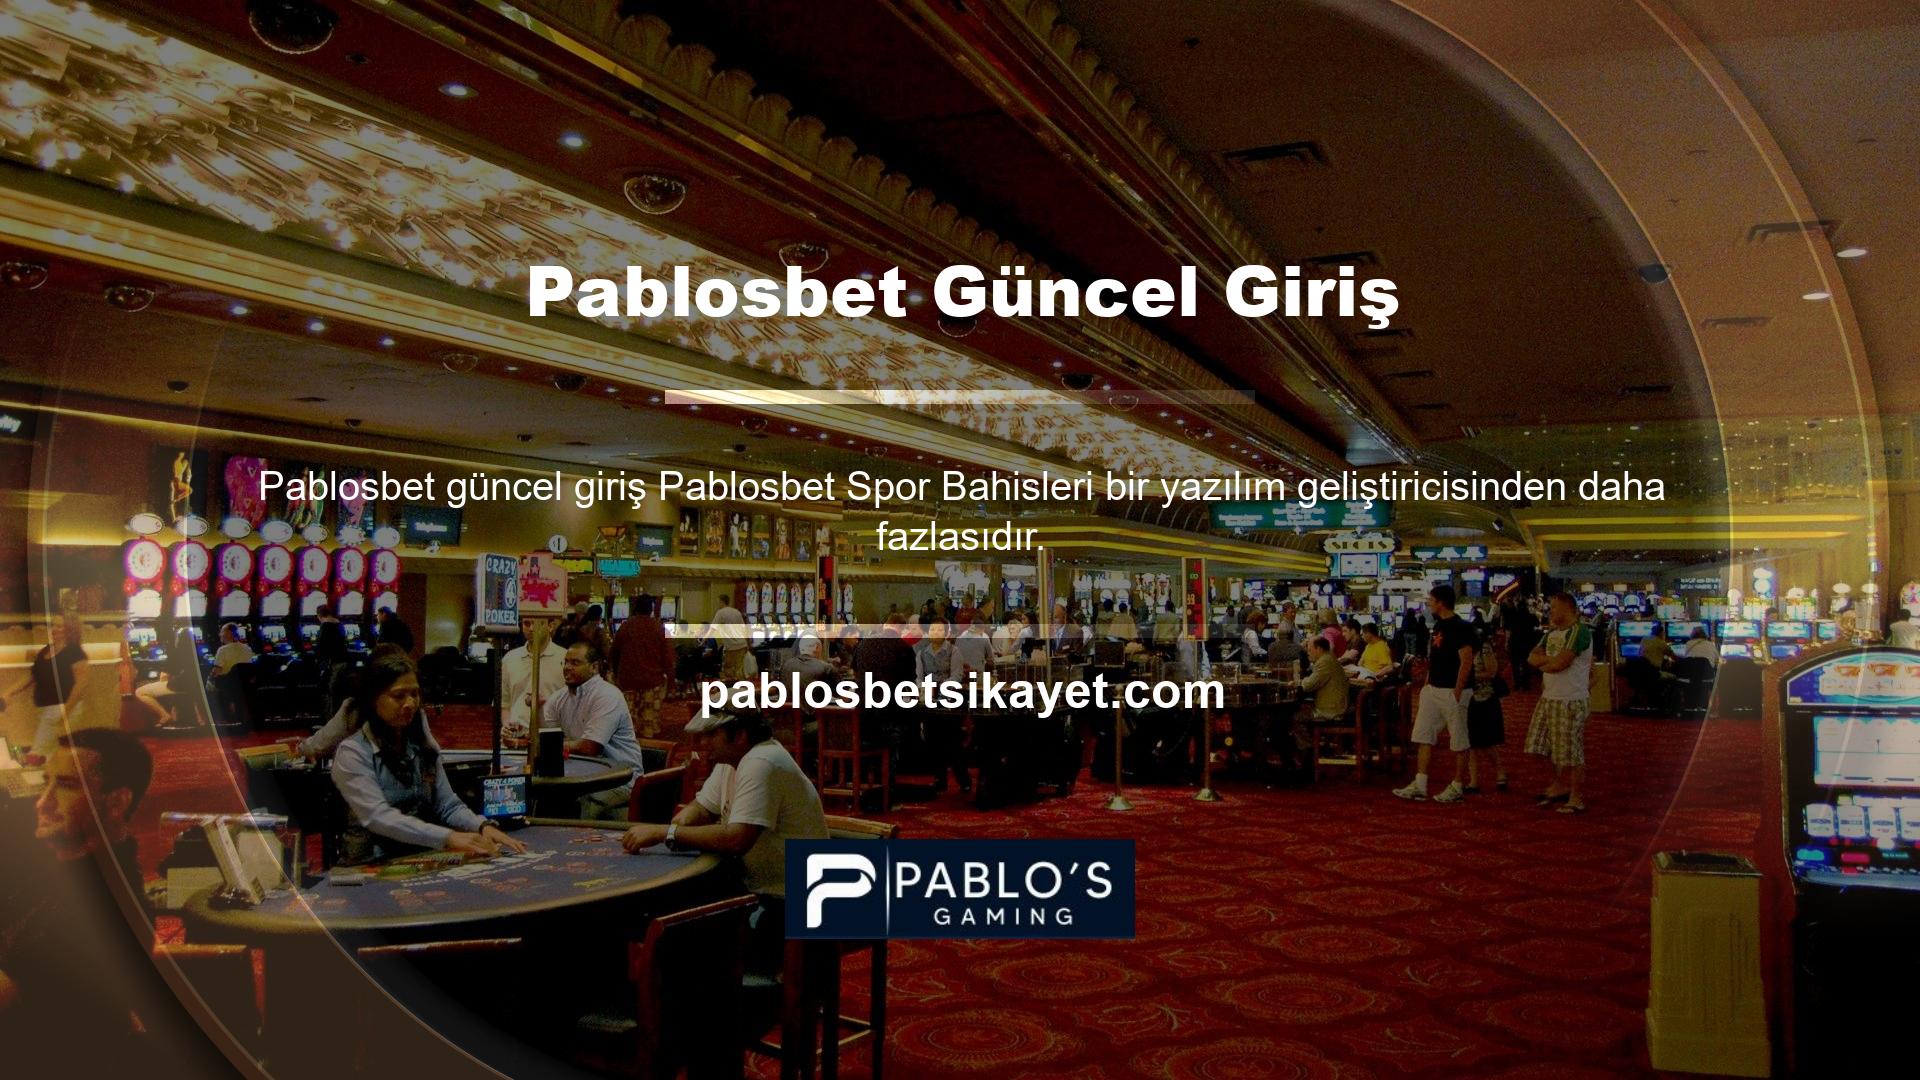 Pablosbet, rulet, bakara ve blackjack gibi detaylı bir masa oyunudur